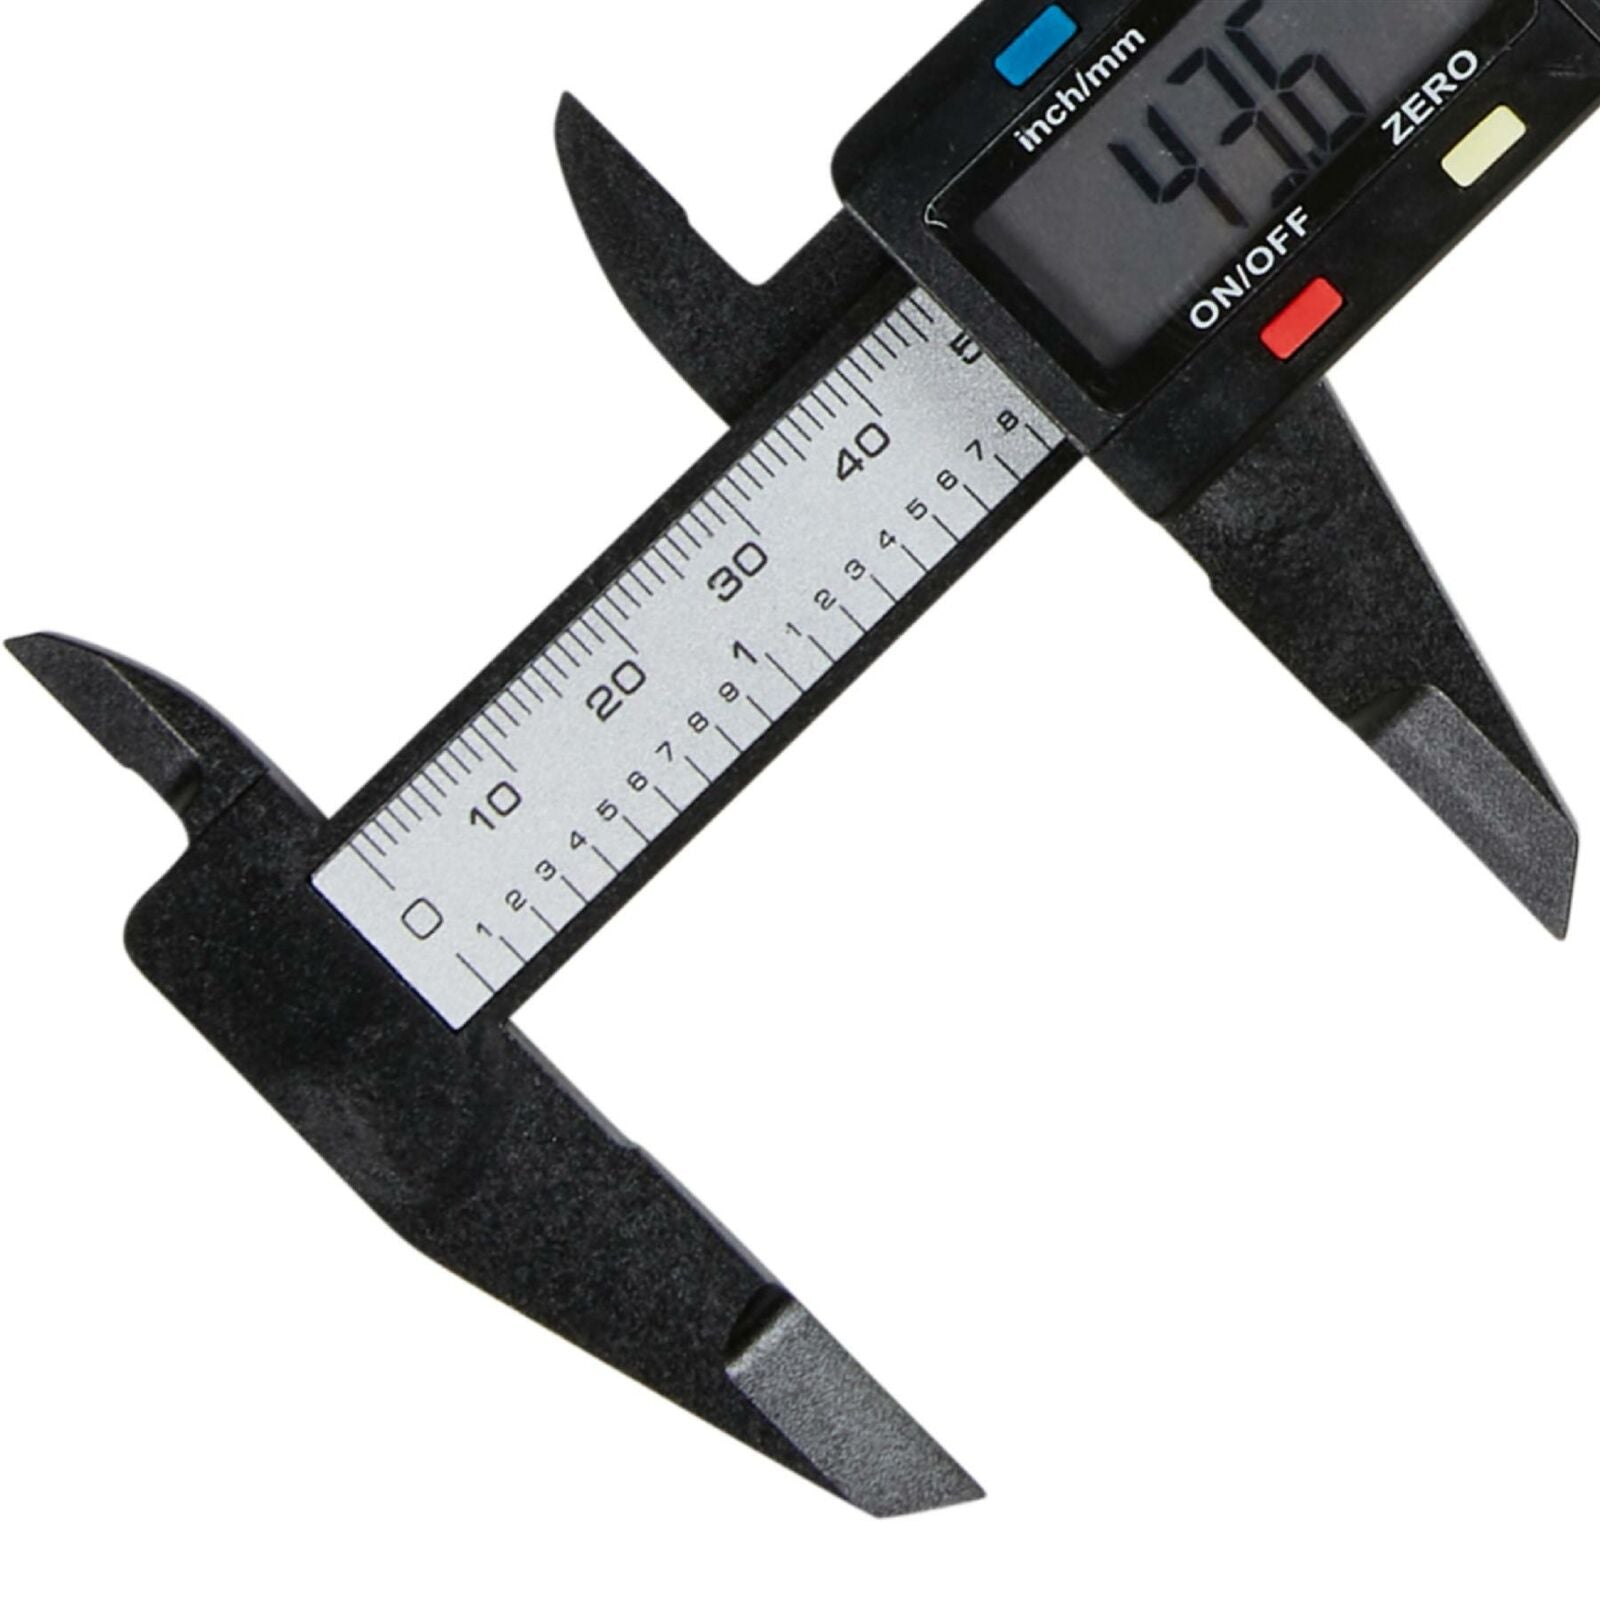 BlueSpot Composite Digital Vernier Caliper Gauge Measuring Measure Tool 150mm